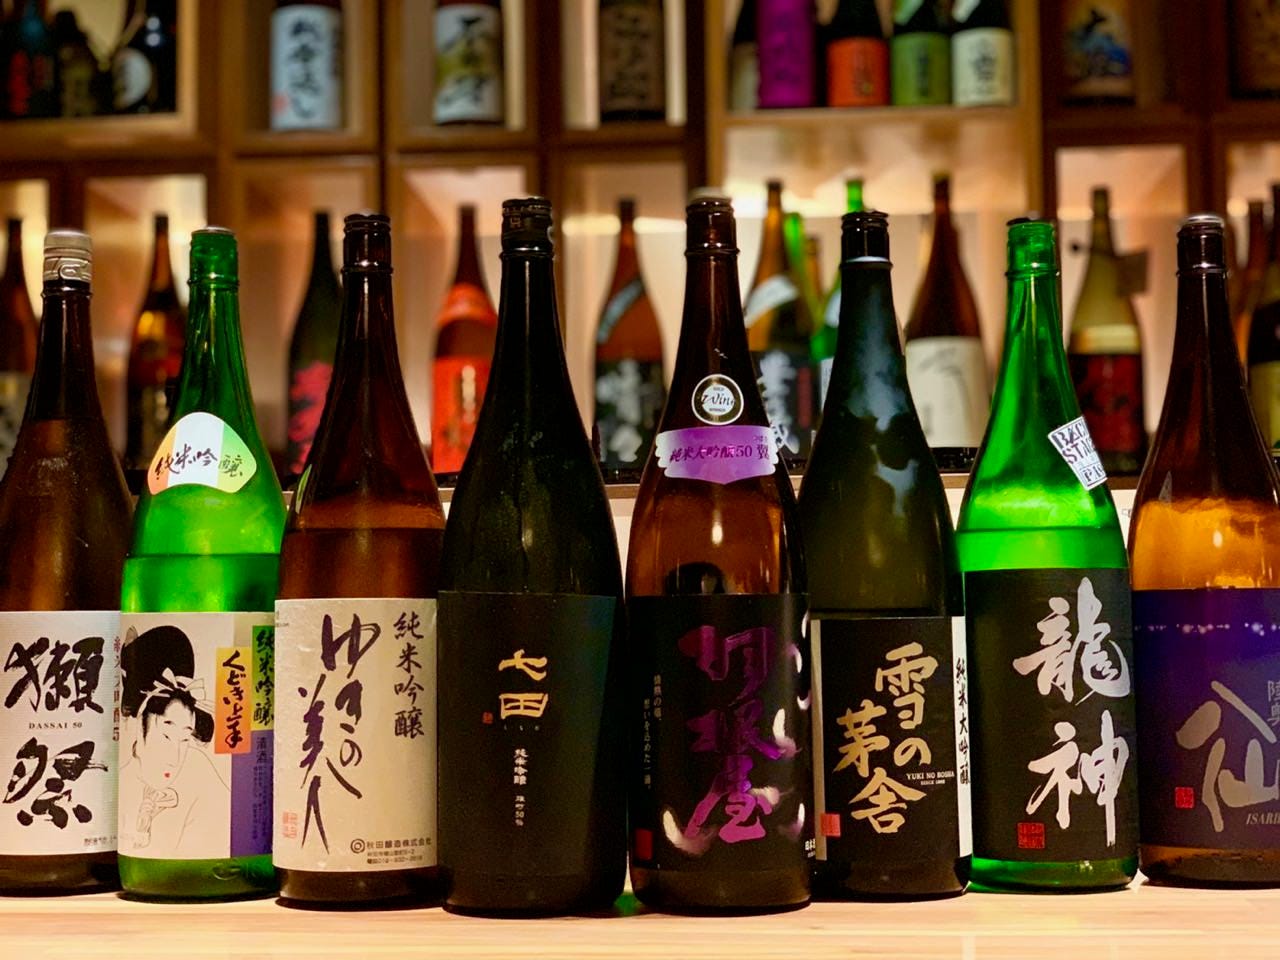 厳選された日本酒
自慢の品揃えです。